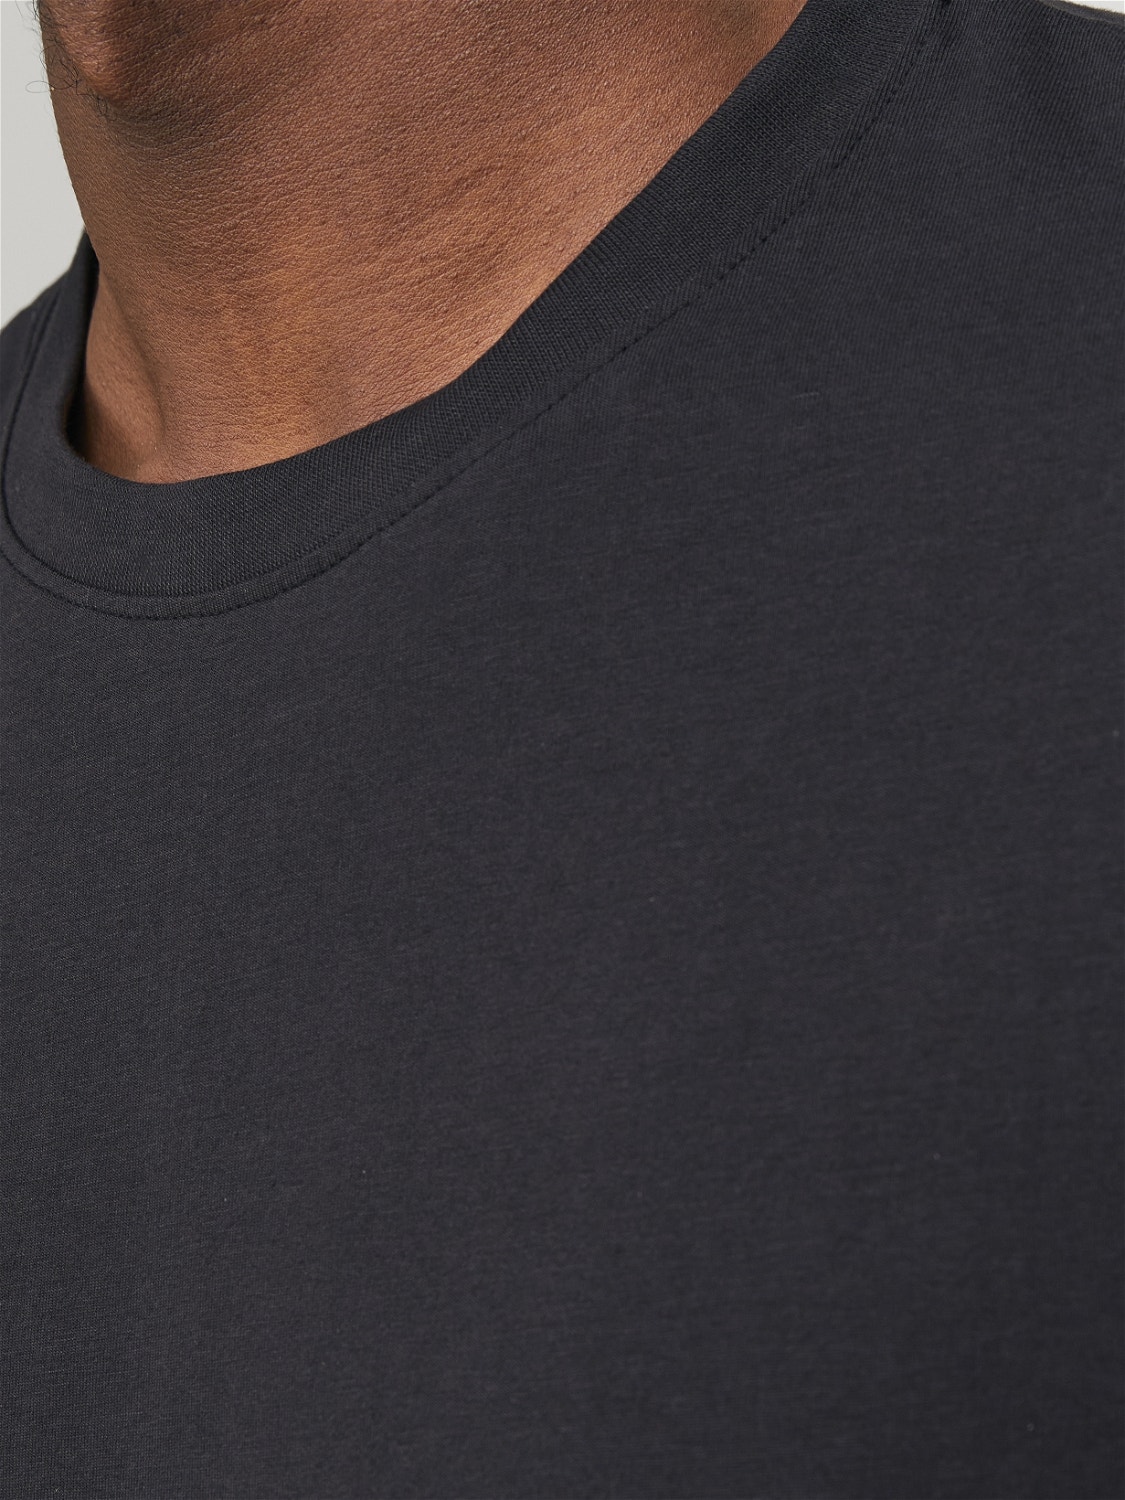 Jack & Jones Enfärgat Rundringning T-shirt -Black Onyx - 12251351